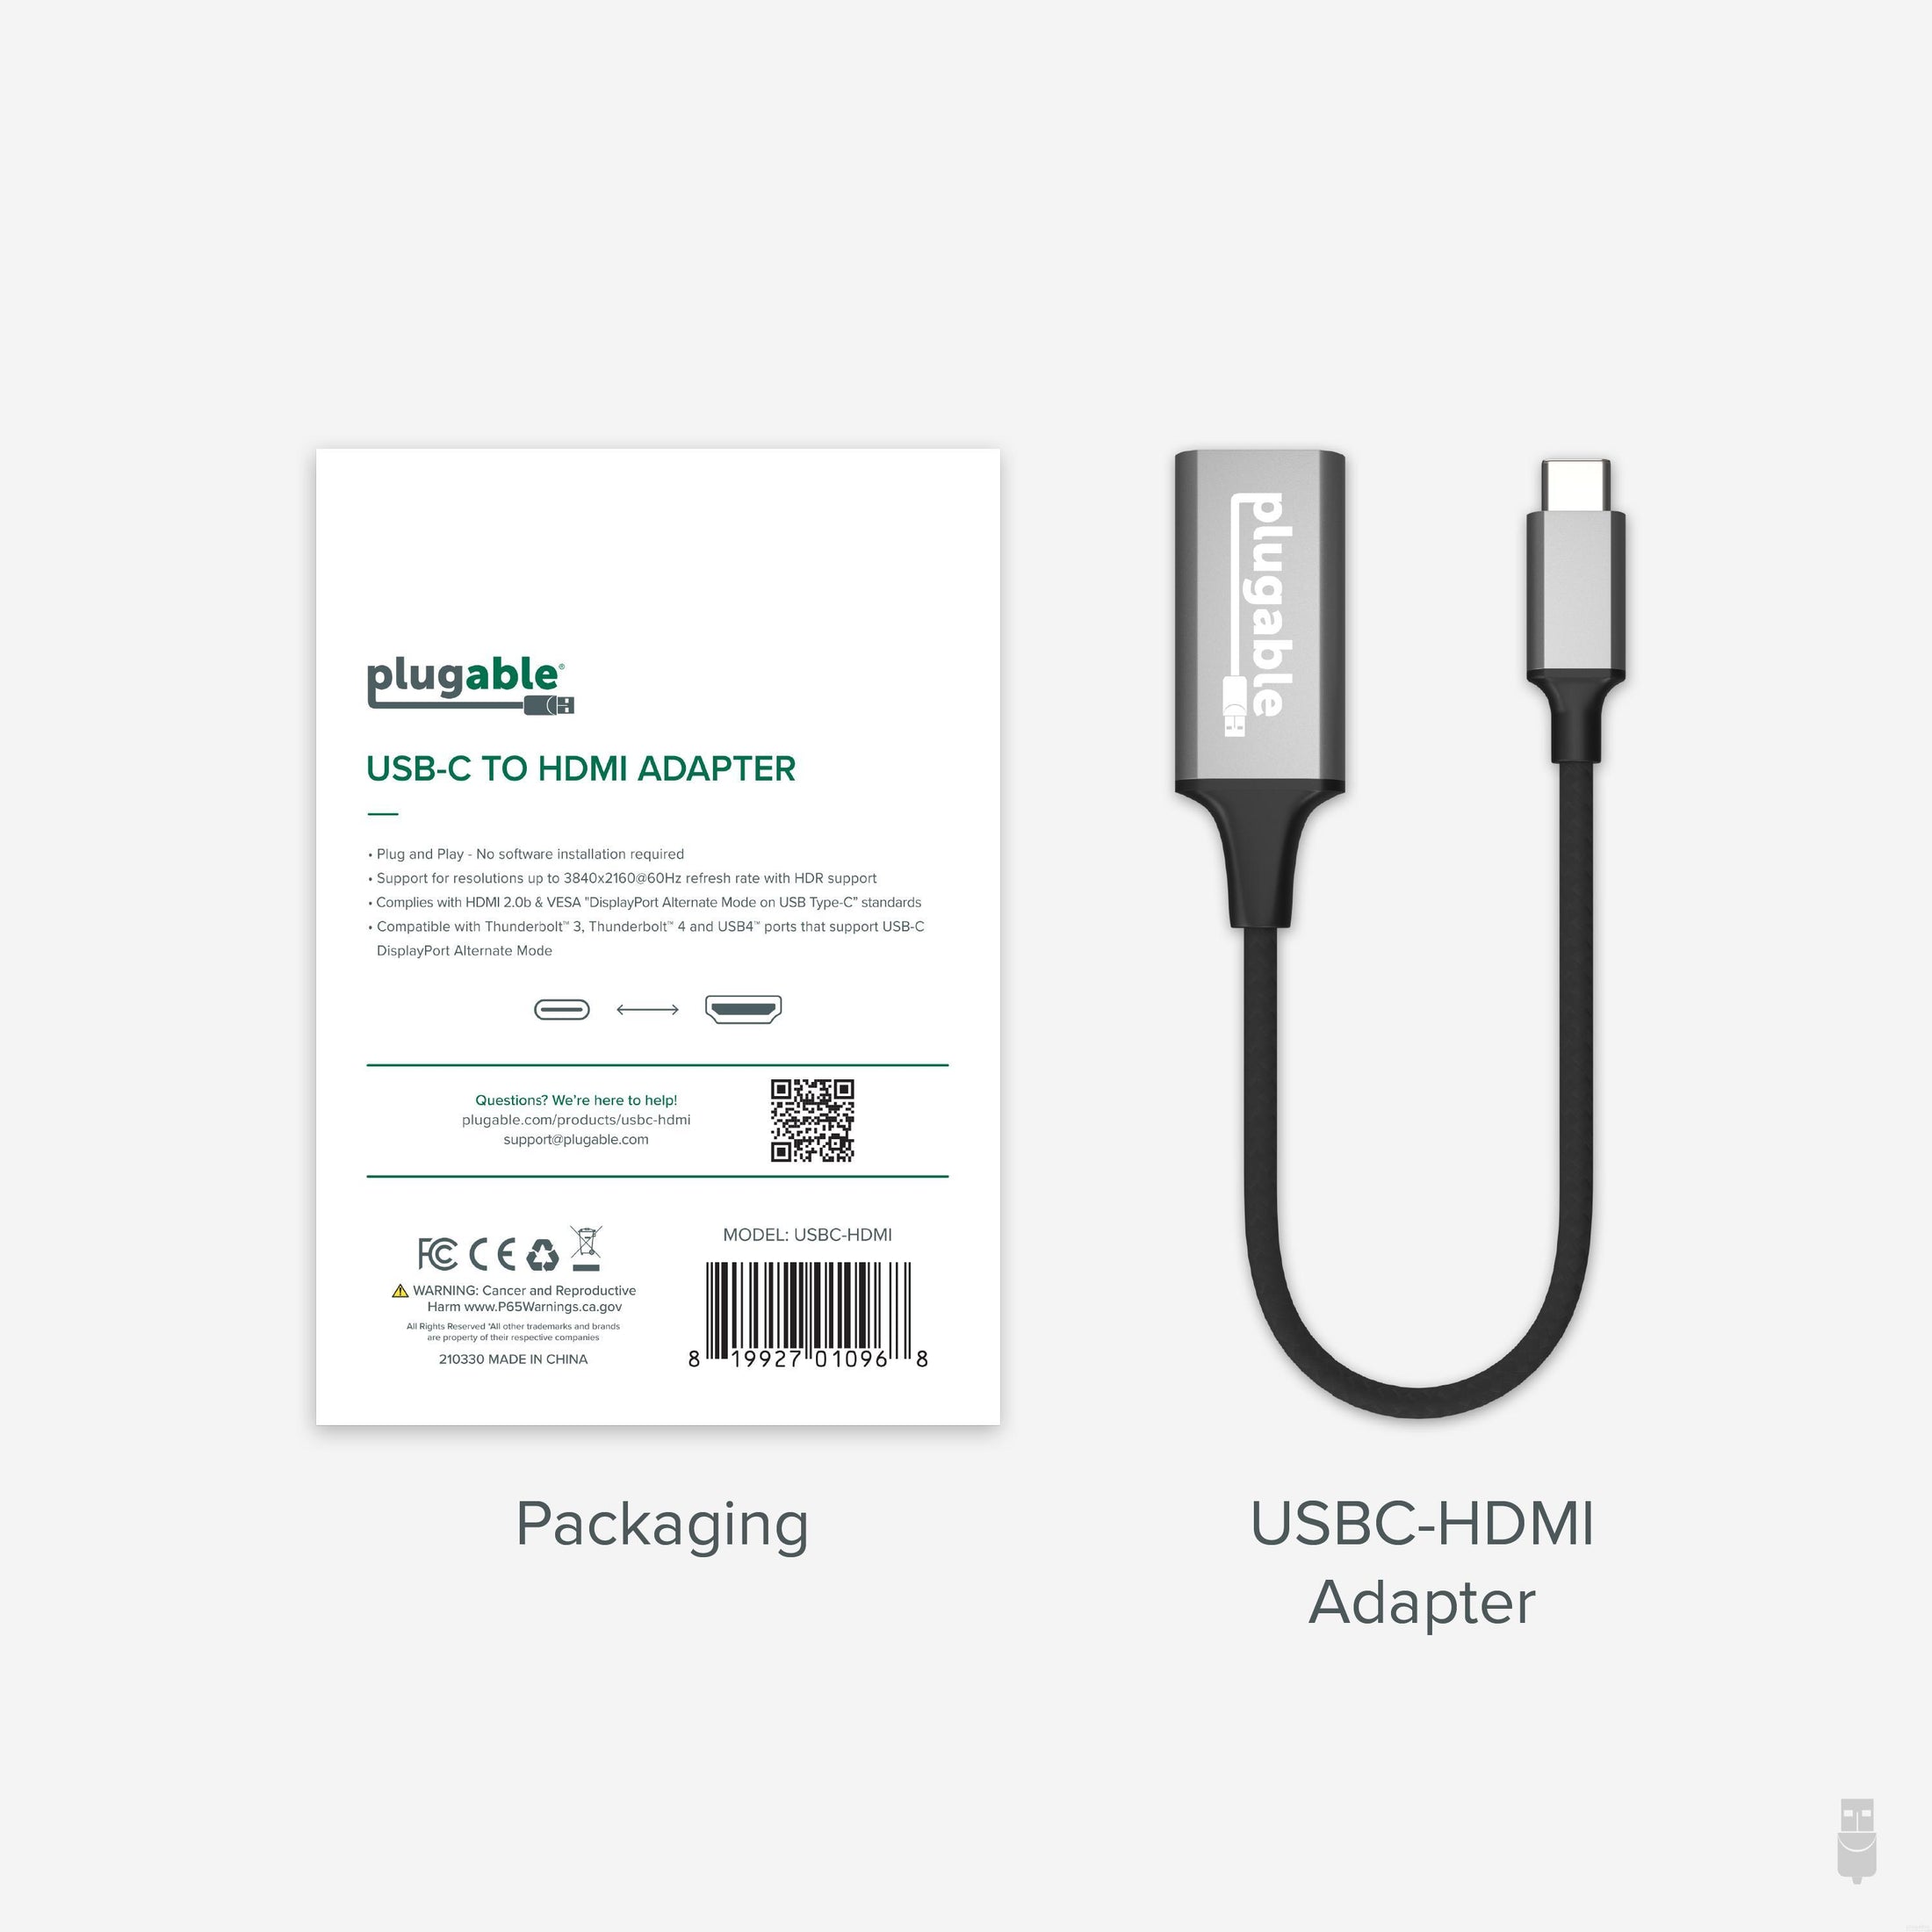 Plugable USB C Hub Multiport Adapter, 4 in 1, 100W Pass Through Charging,  USB C to HDMI 4K 60Hz, Multi USB Port Hub for Windows, Mac, Ipad Pro